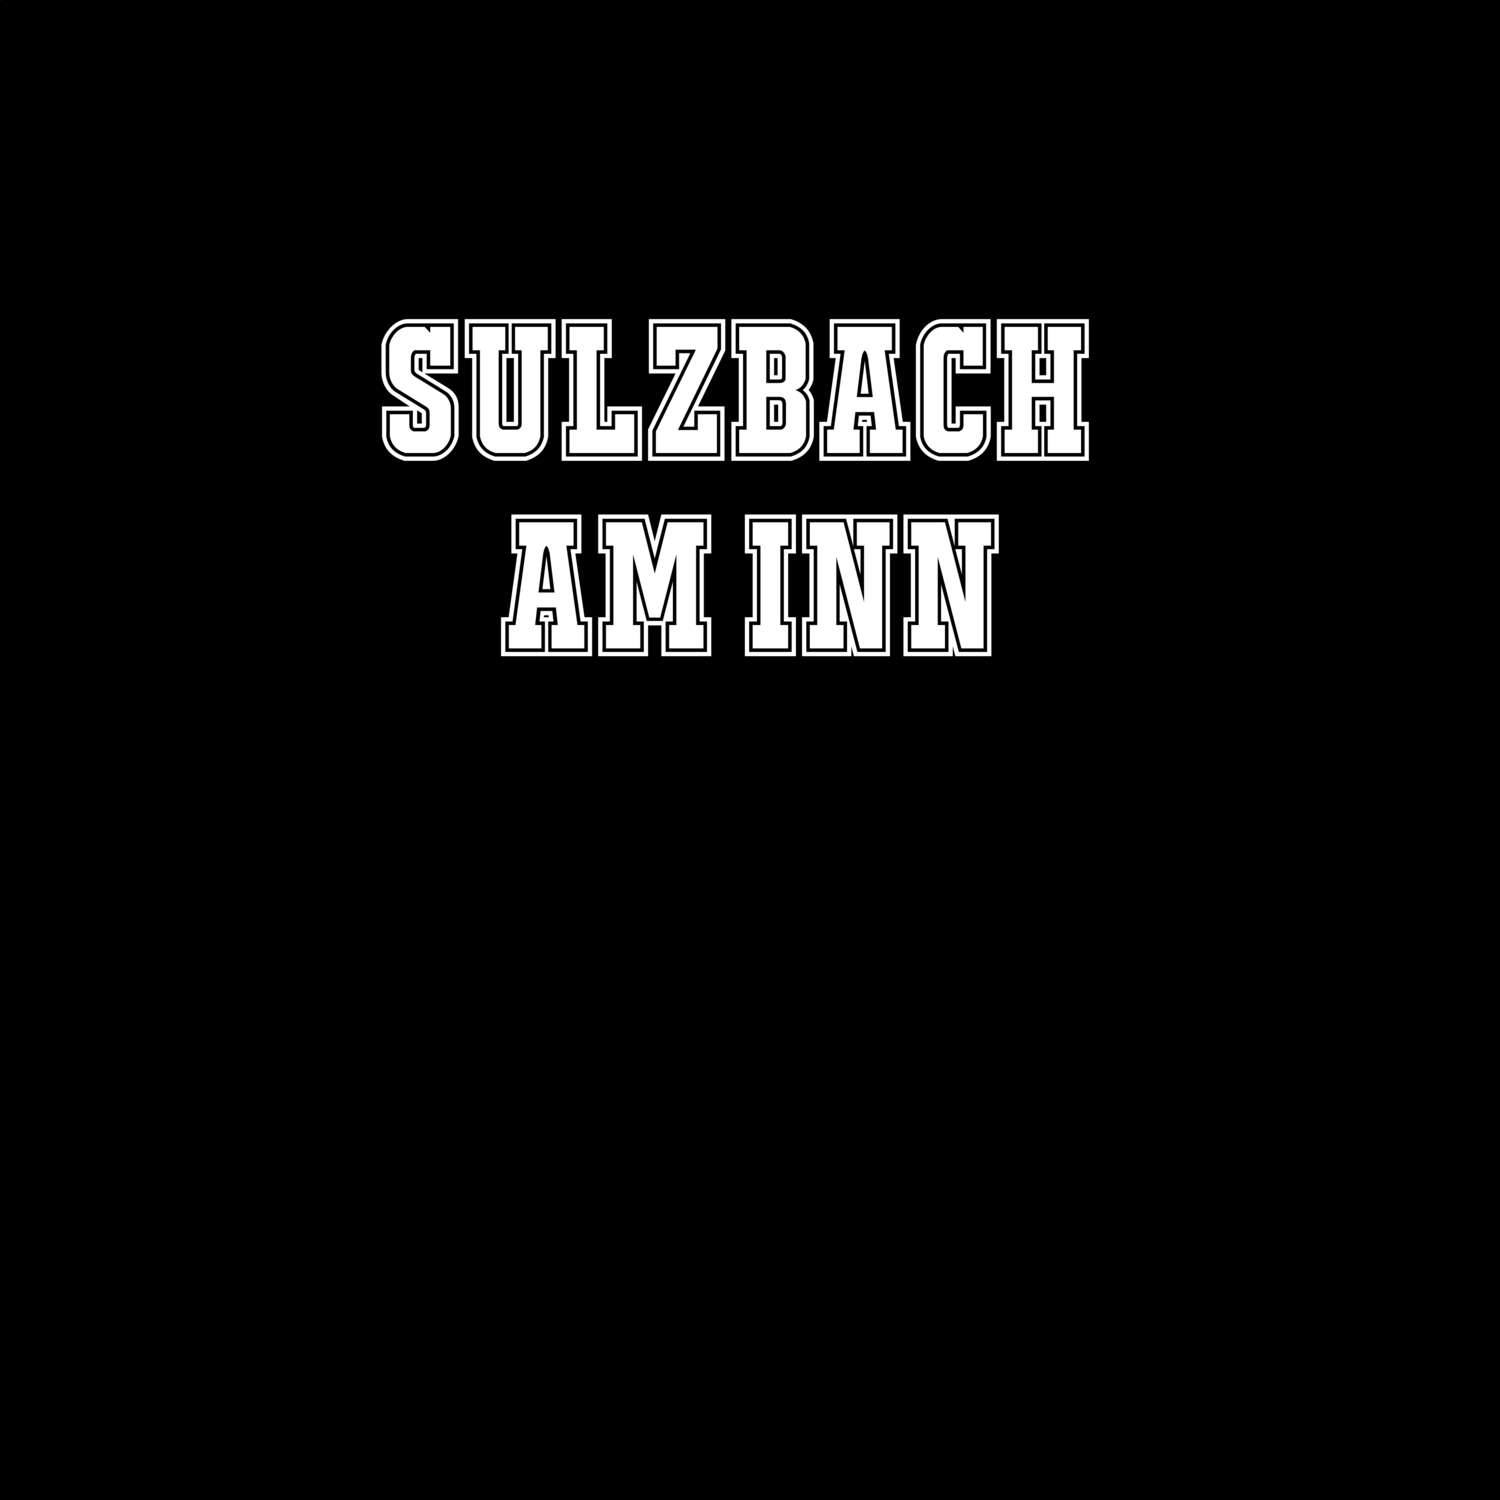 Sulzbach am Inn T-Shirt »Classic«